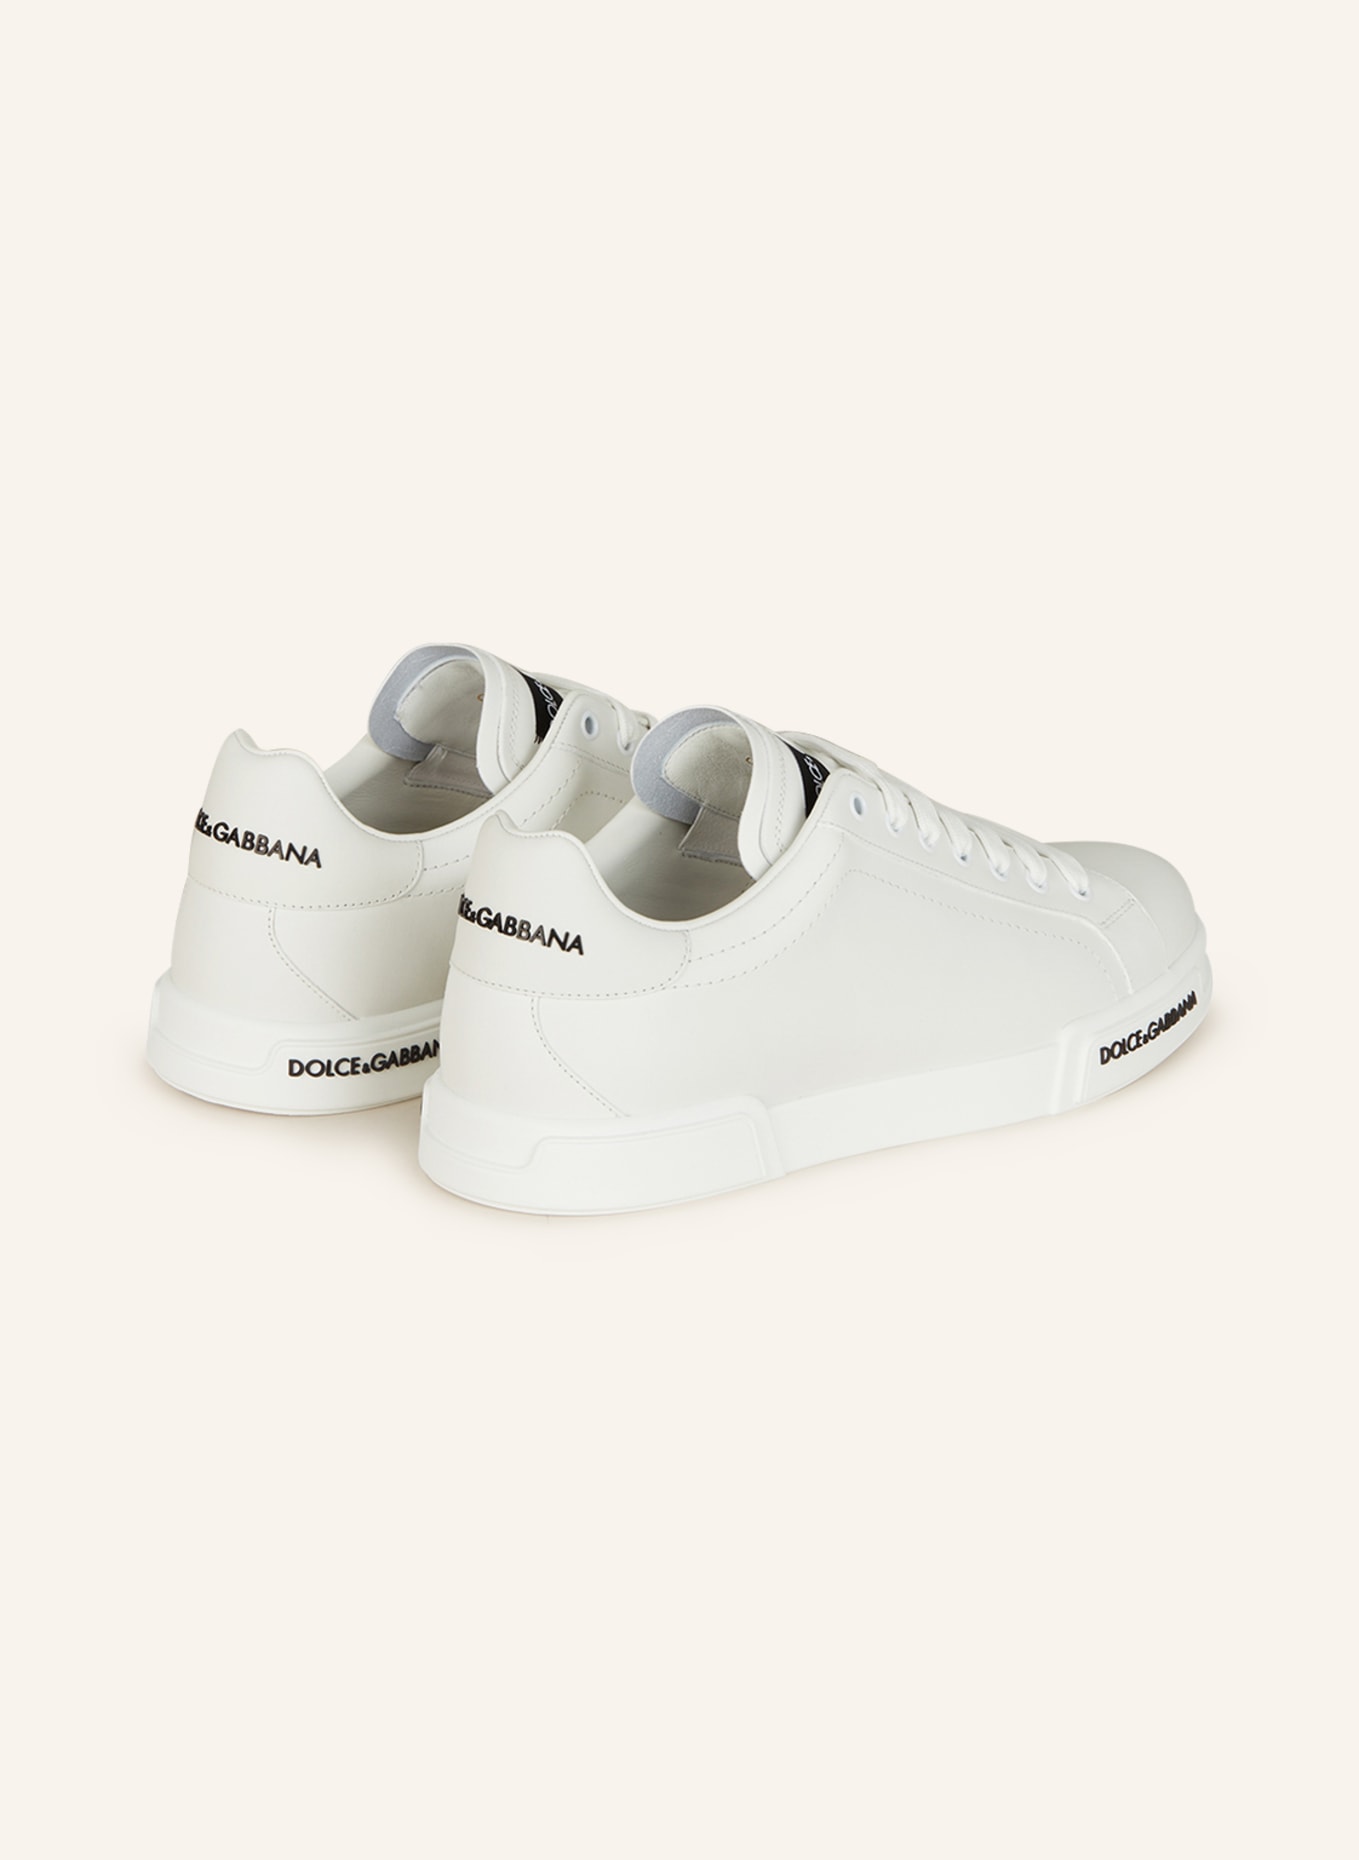 DOLCE & GABBANA Sneakers PORTOFINO, Color: WHITE (Image 2)